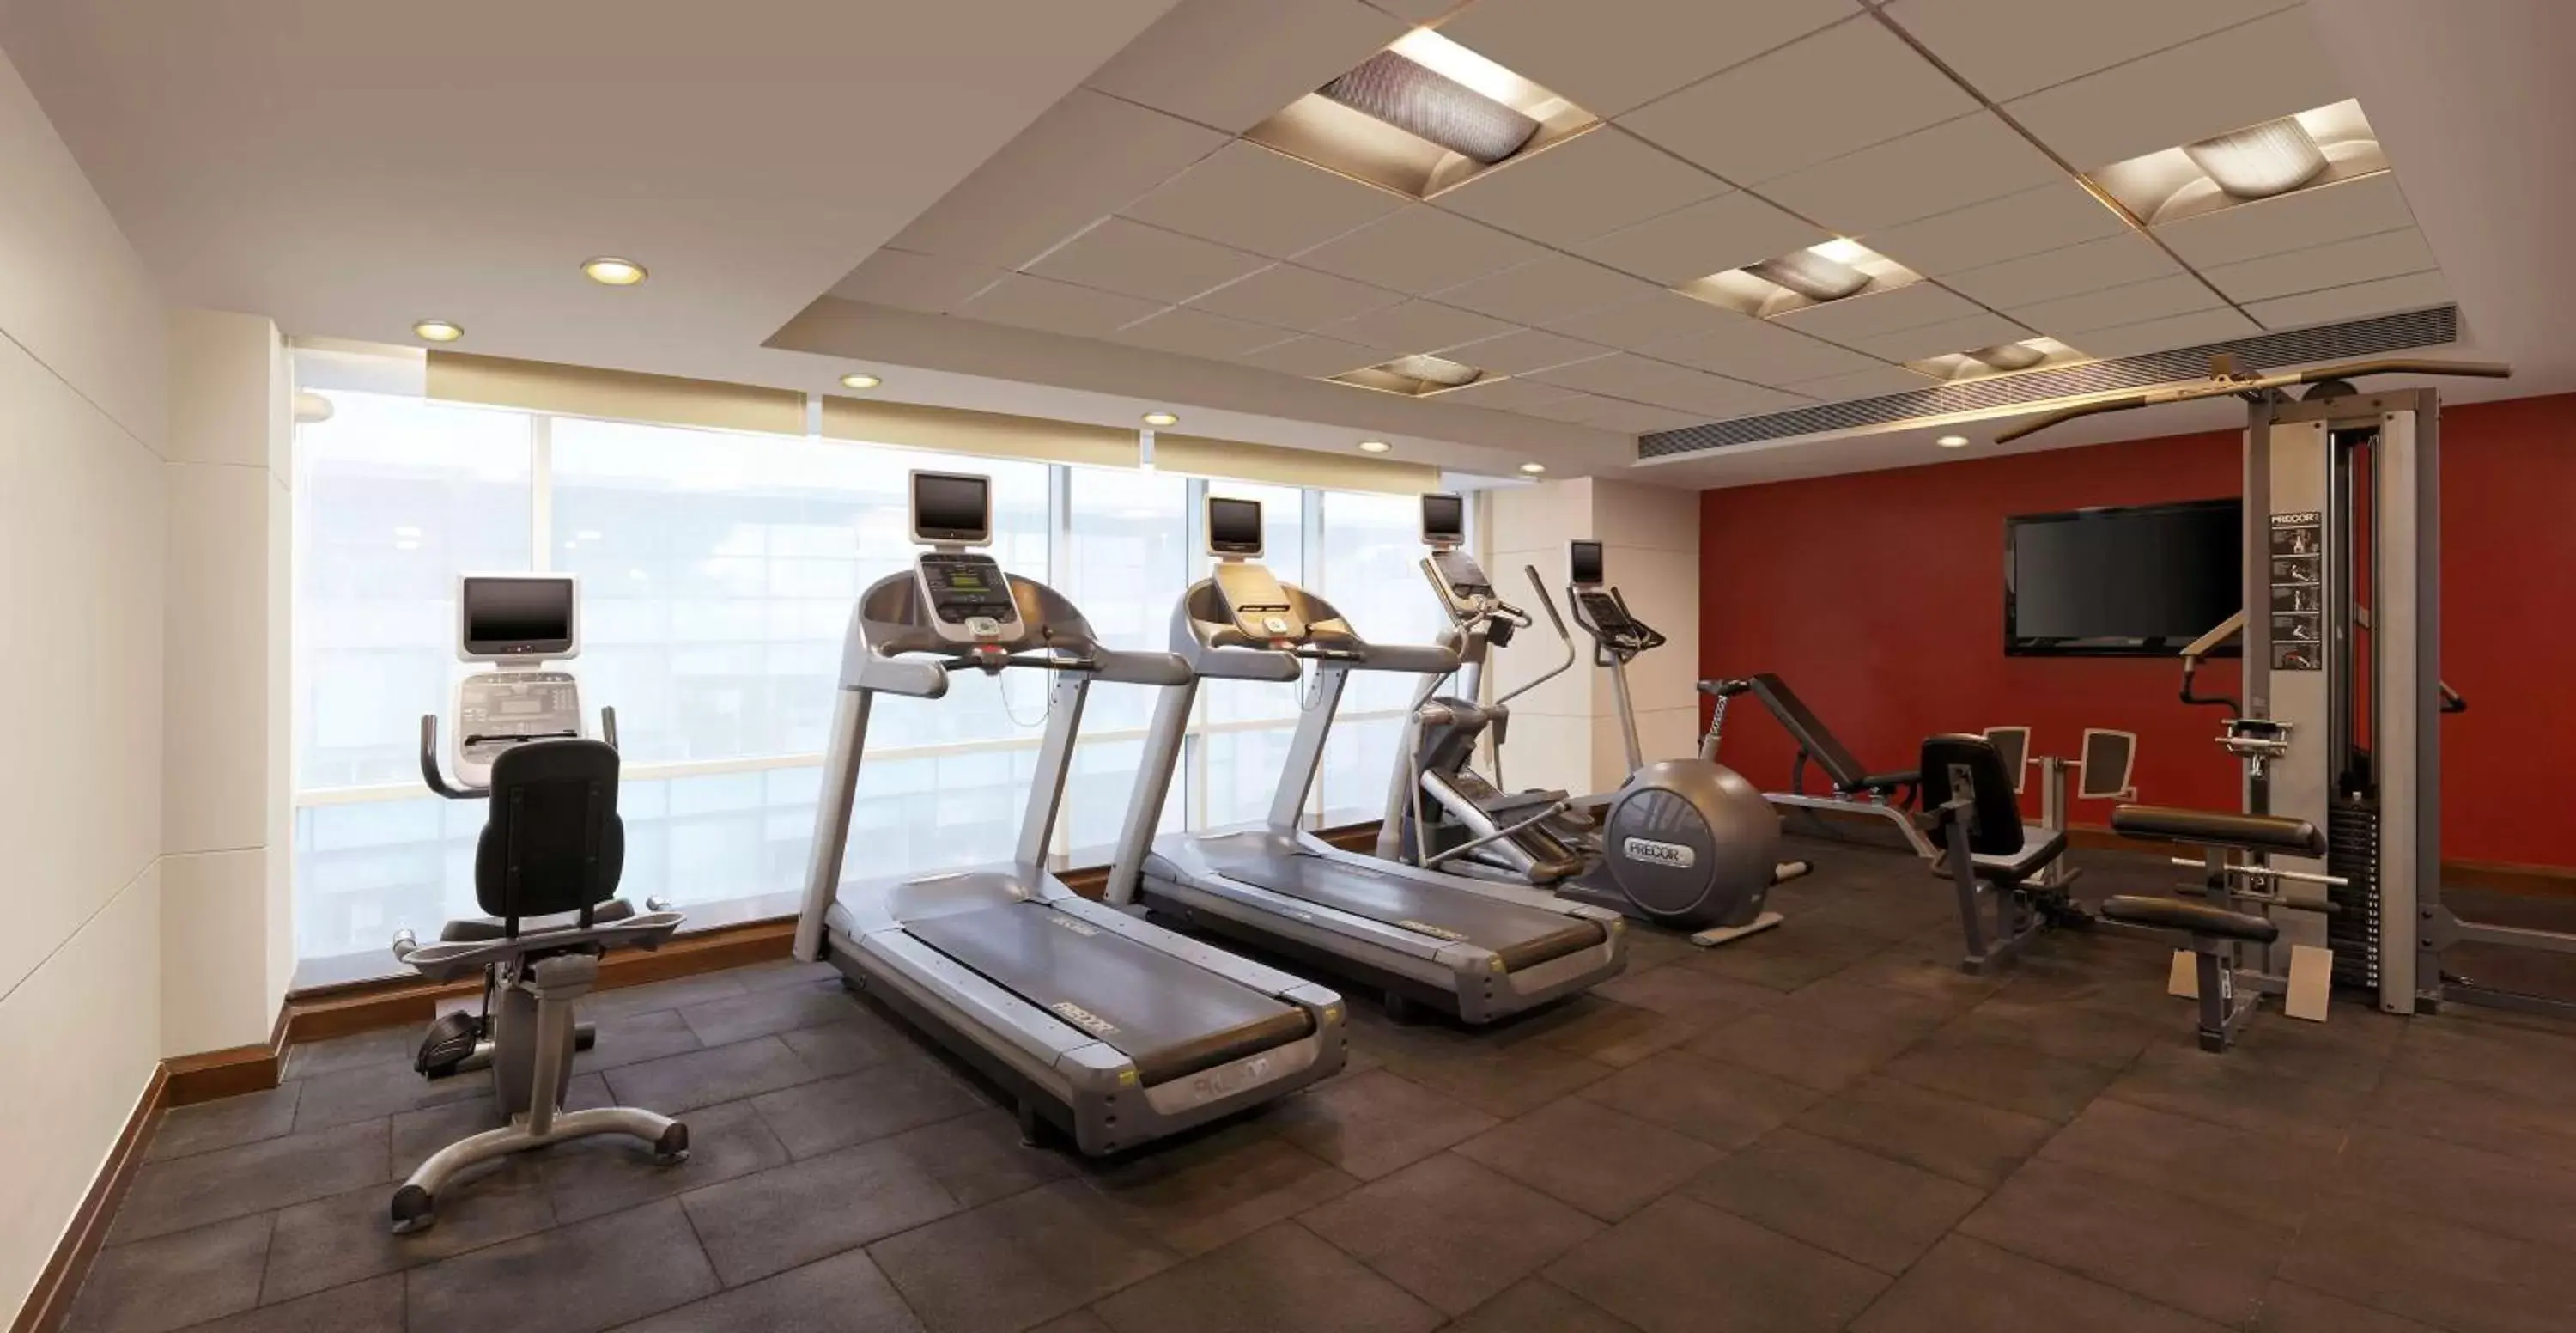 Fitness centre/facilities, Fitness Center/Facilities in Hilton Garden Inn New Delhi/Saket